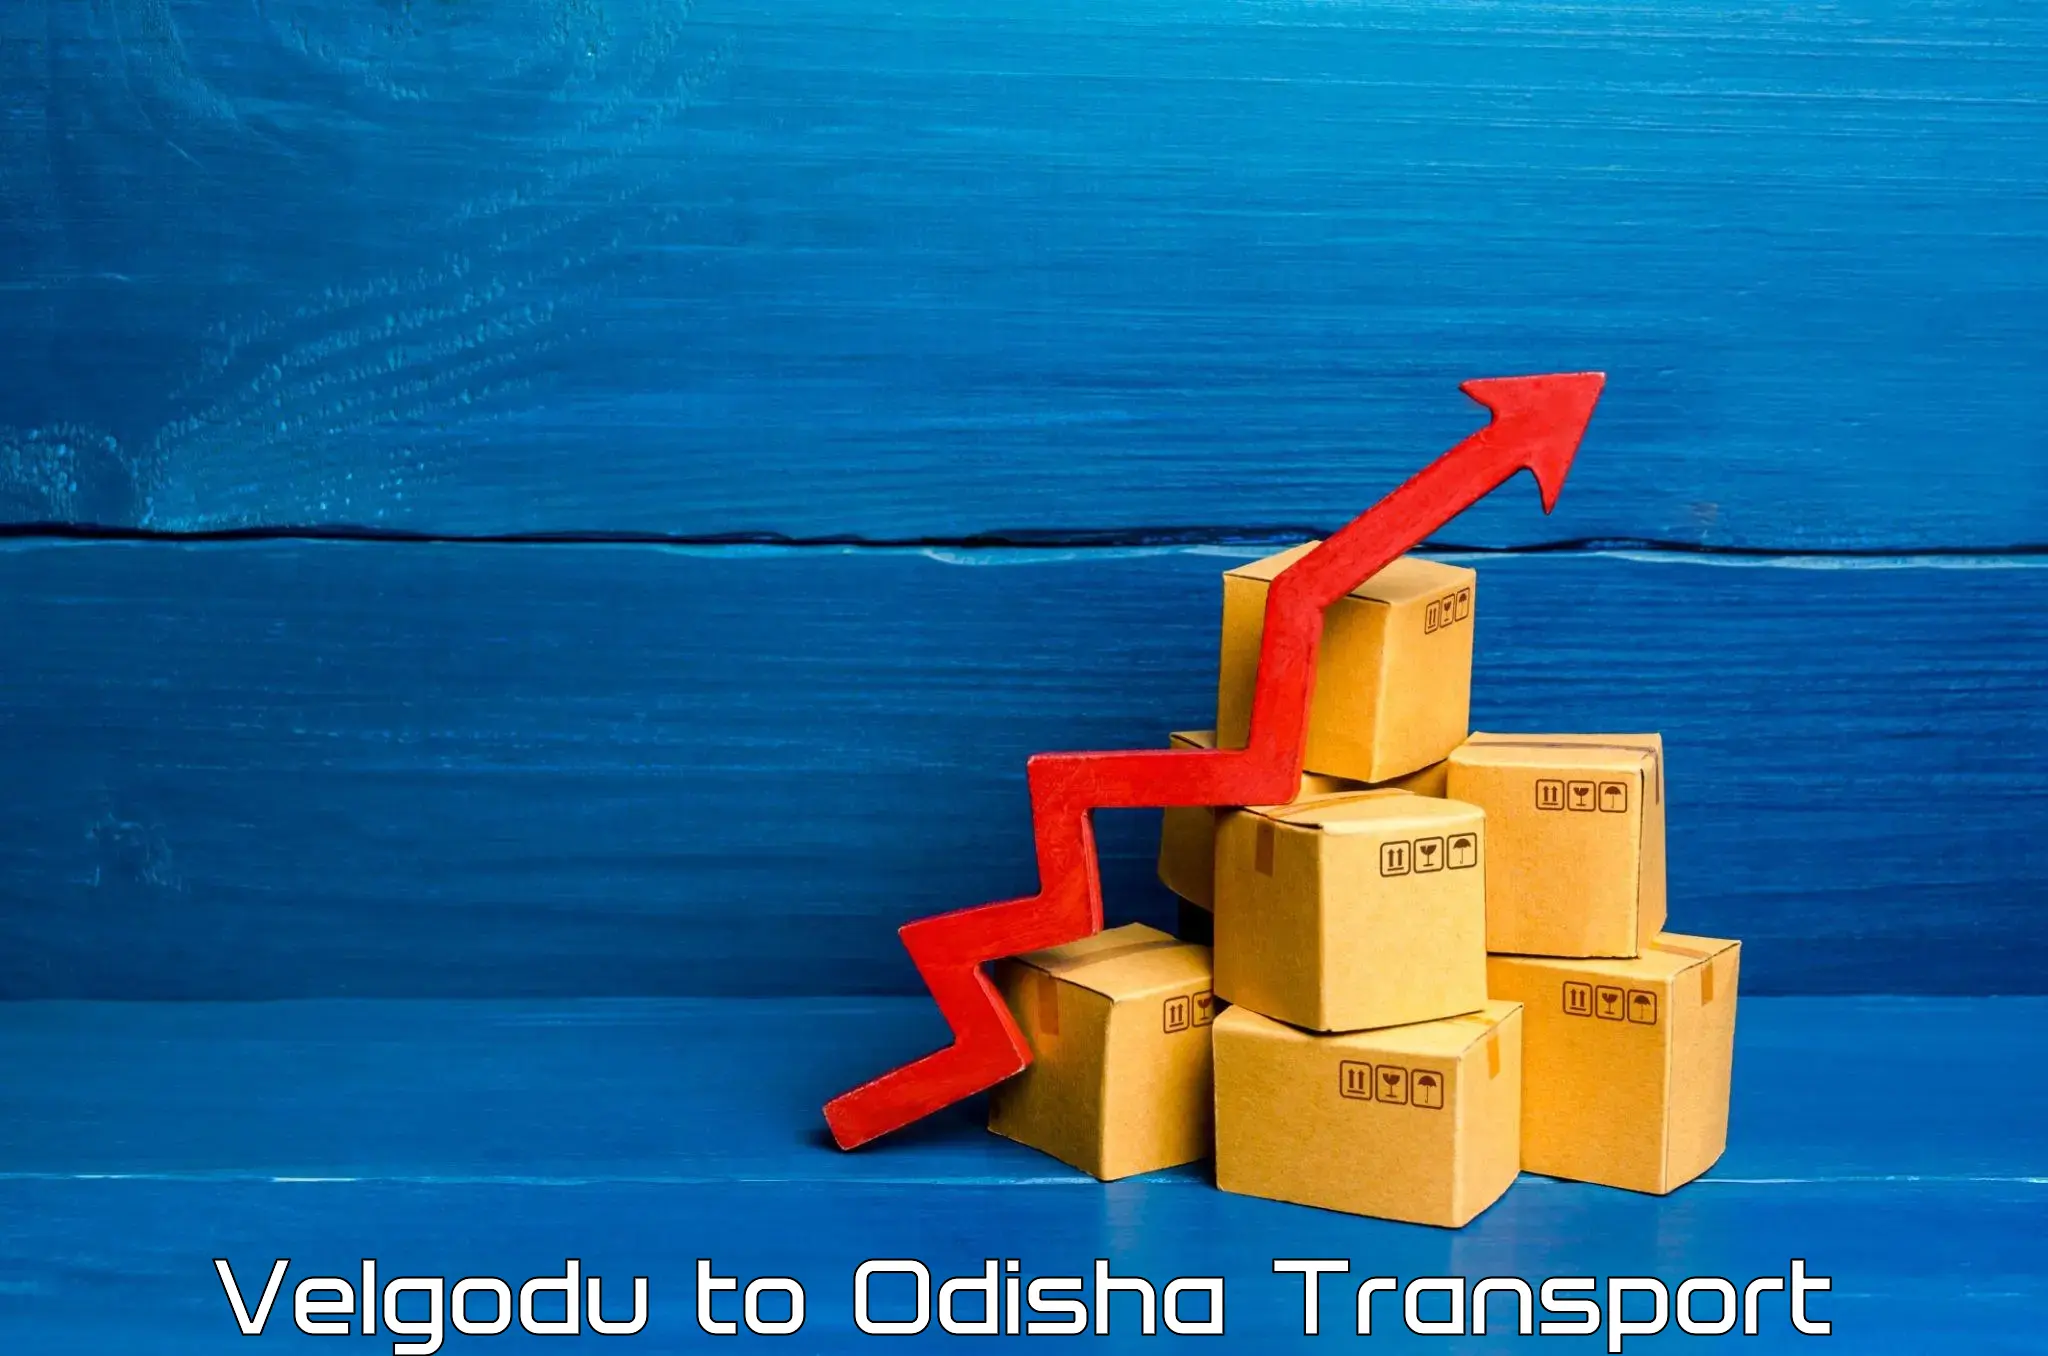 Shipping partner Velgodu to Mohana